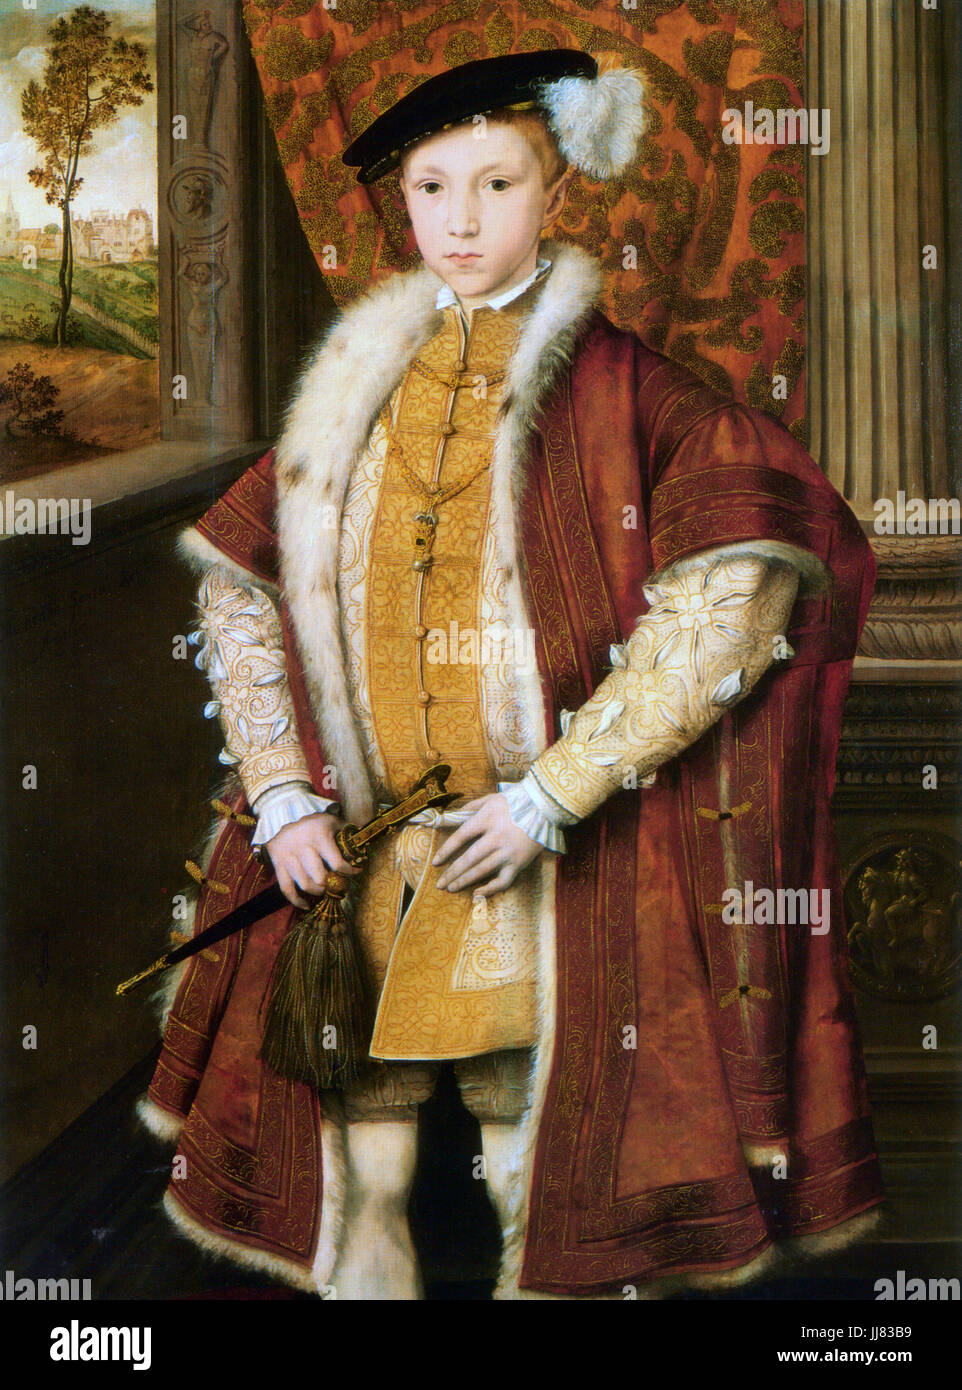 Edoardo VI d'Inghilterra (1537-1553) come il Principe di Galles nel 1546 - artista sconosciuto Foto Stock